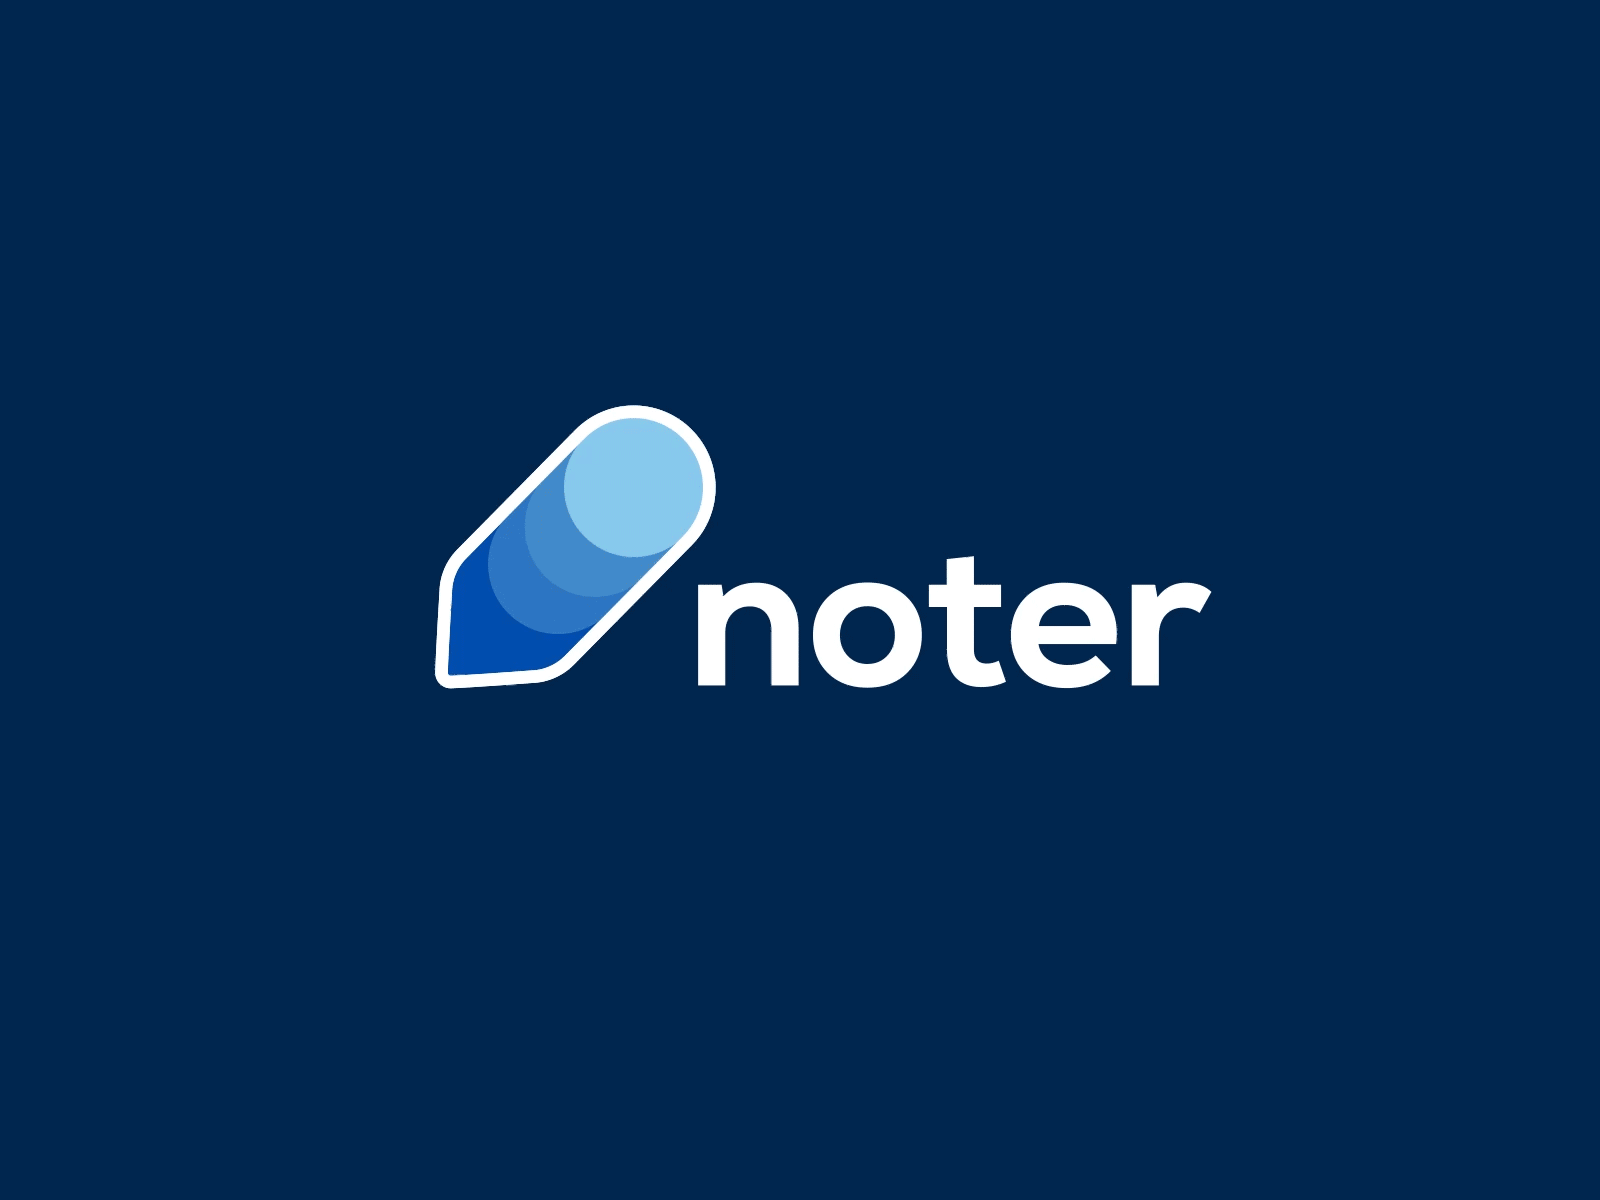 Noter Logo Animation